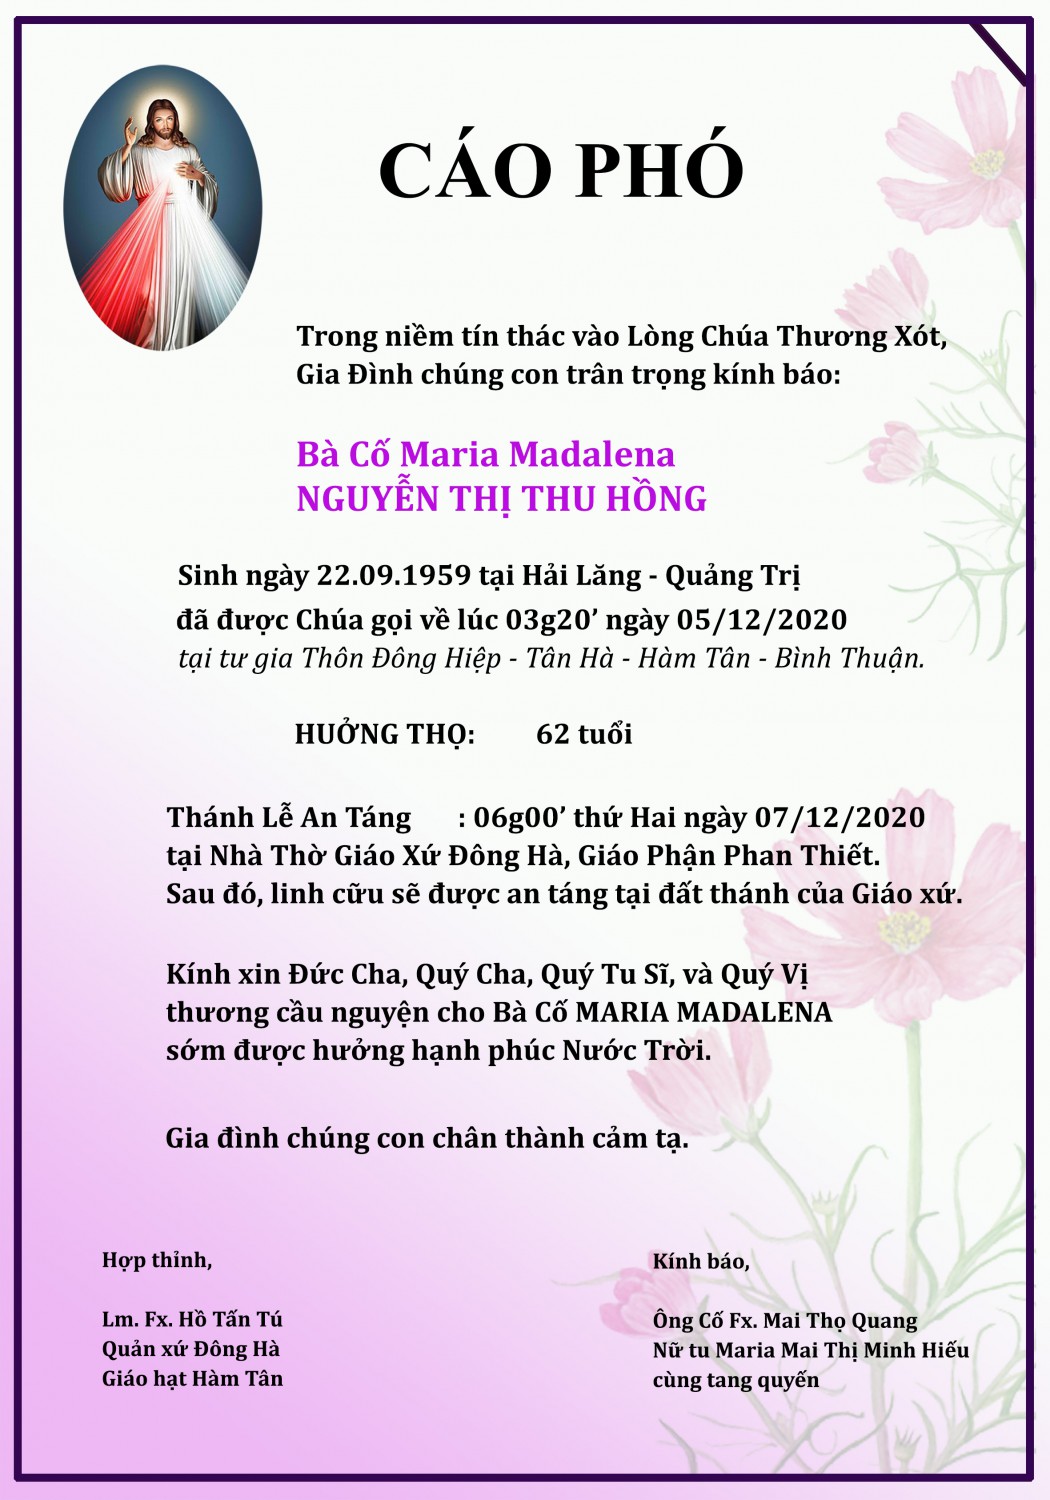 Bà Cố Maria Mad Nguyen Thi Thu Hong